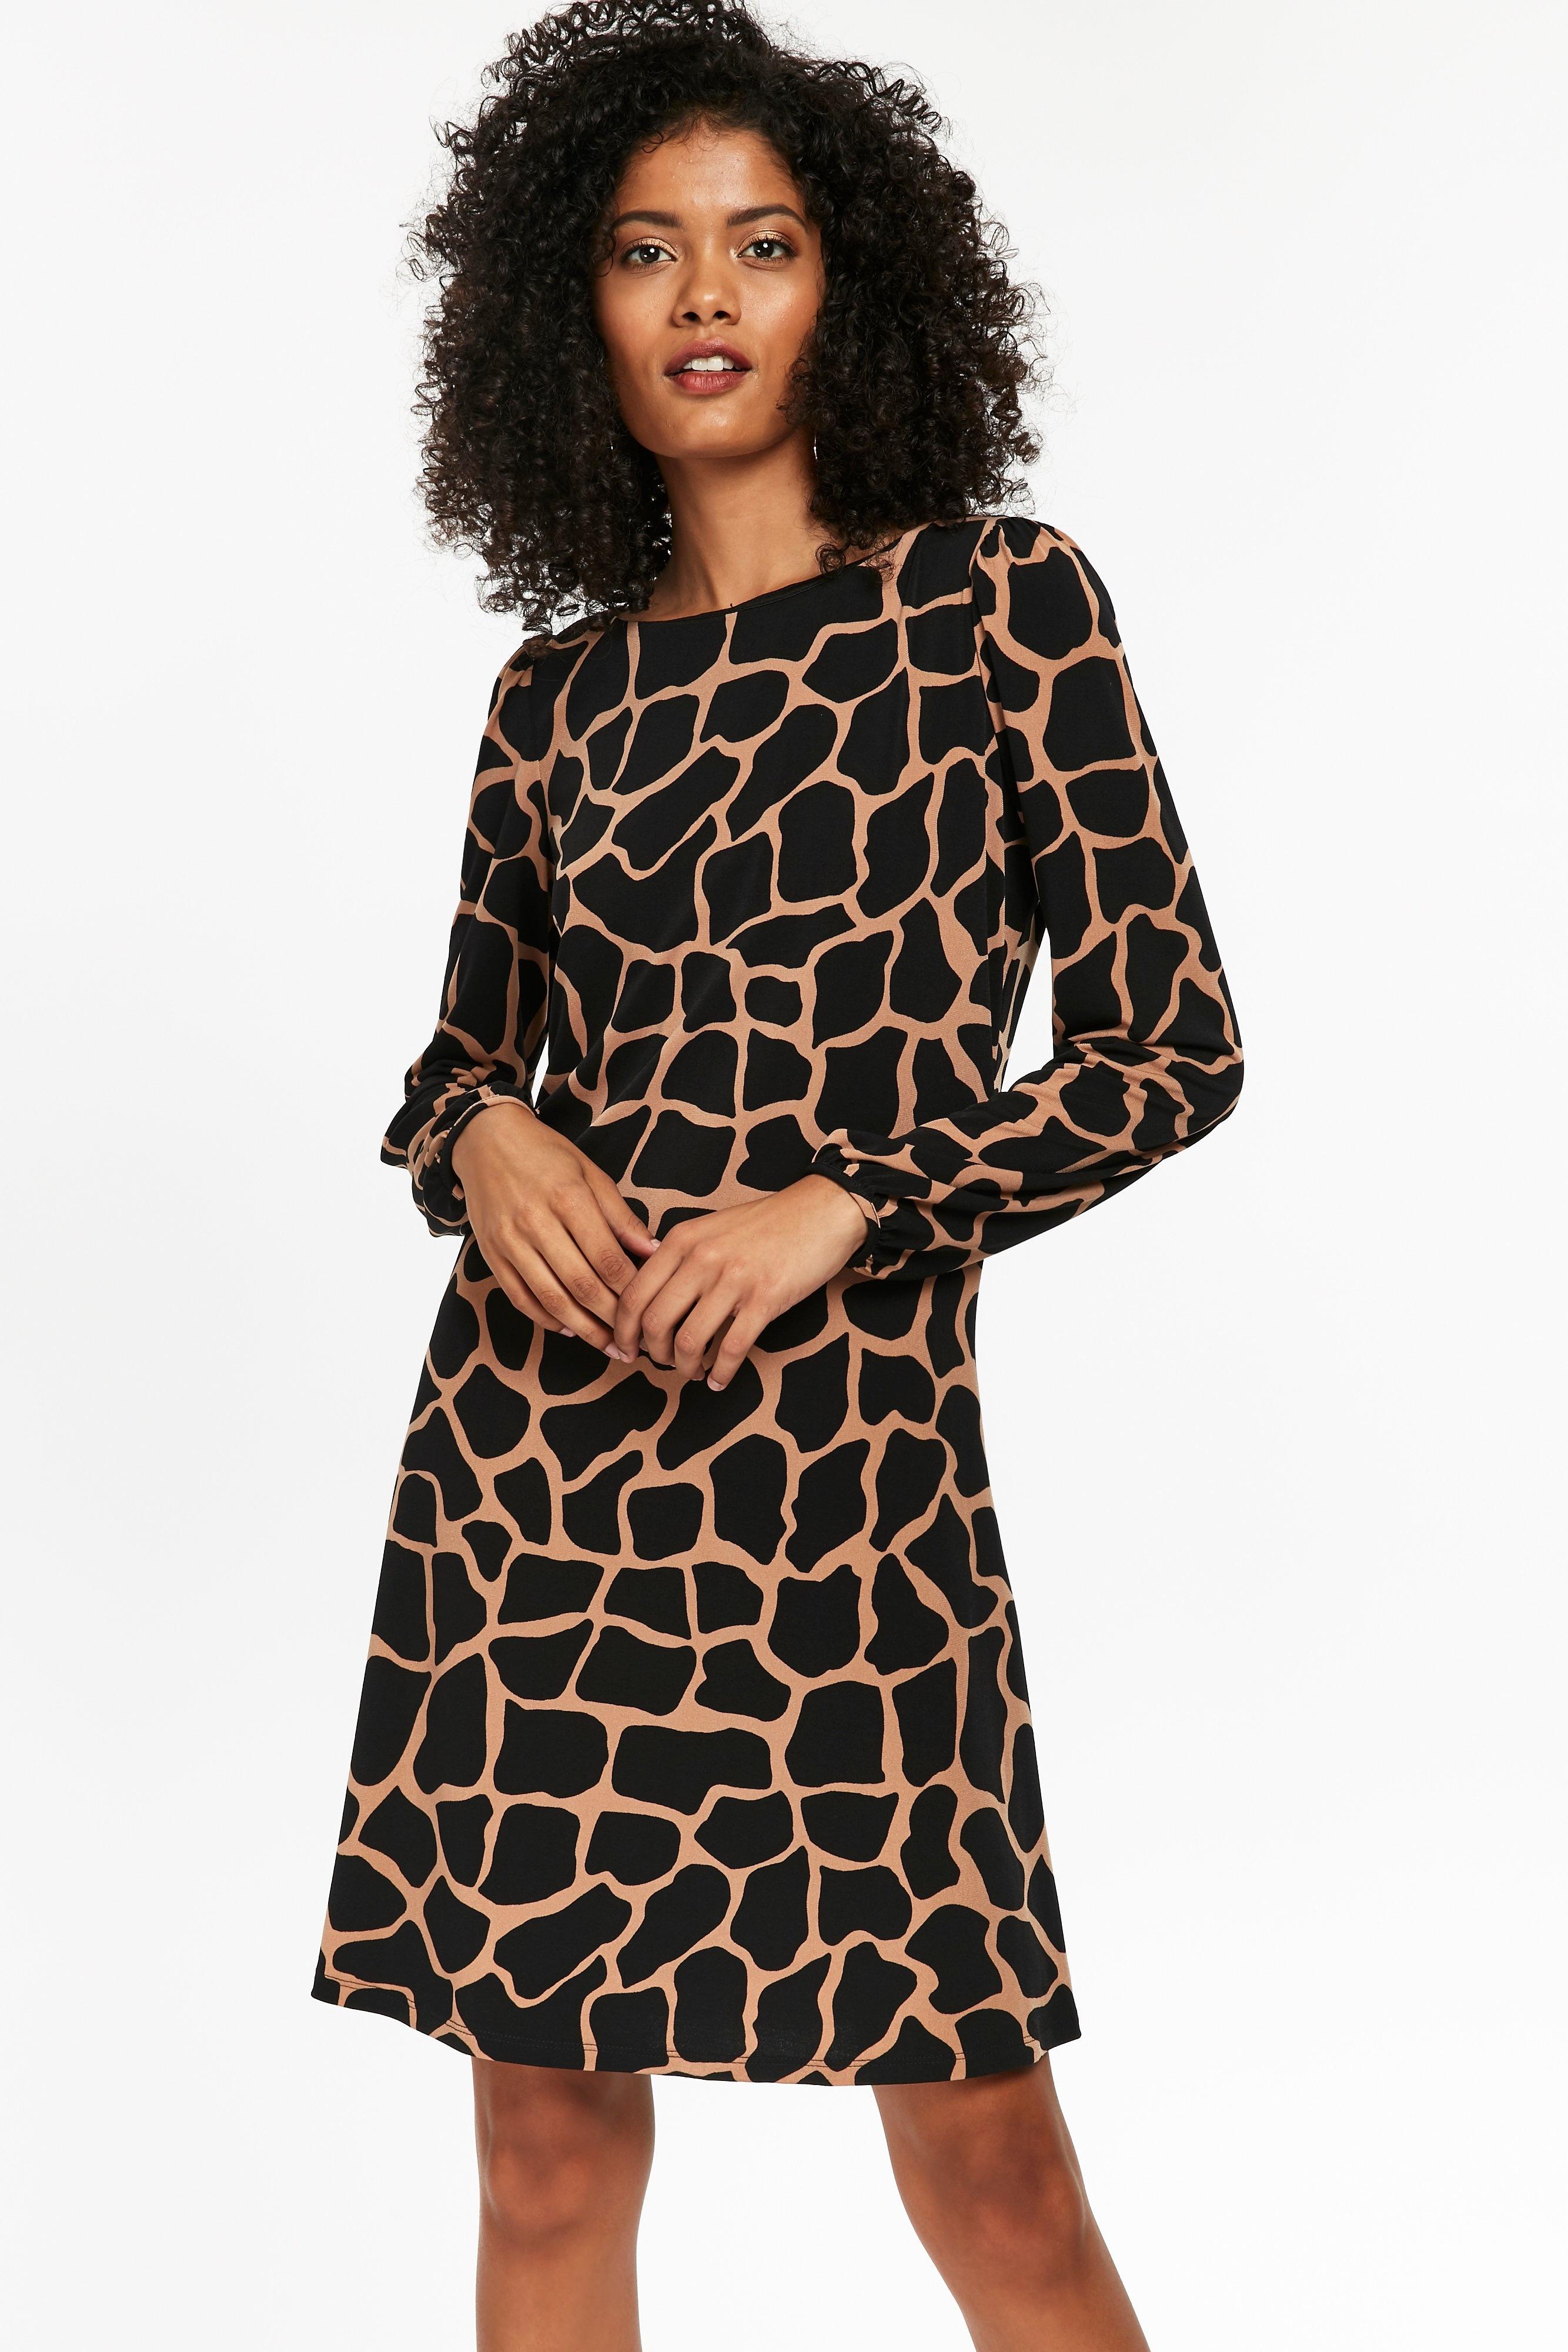 wallis giraffe dress